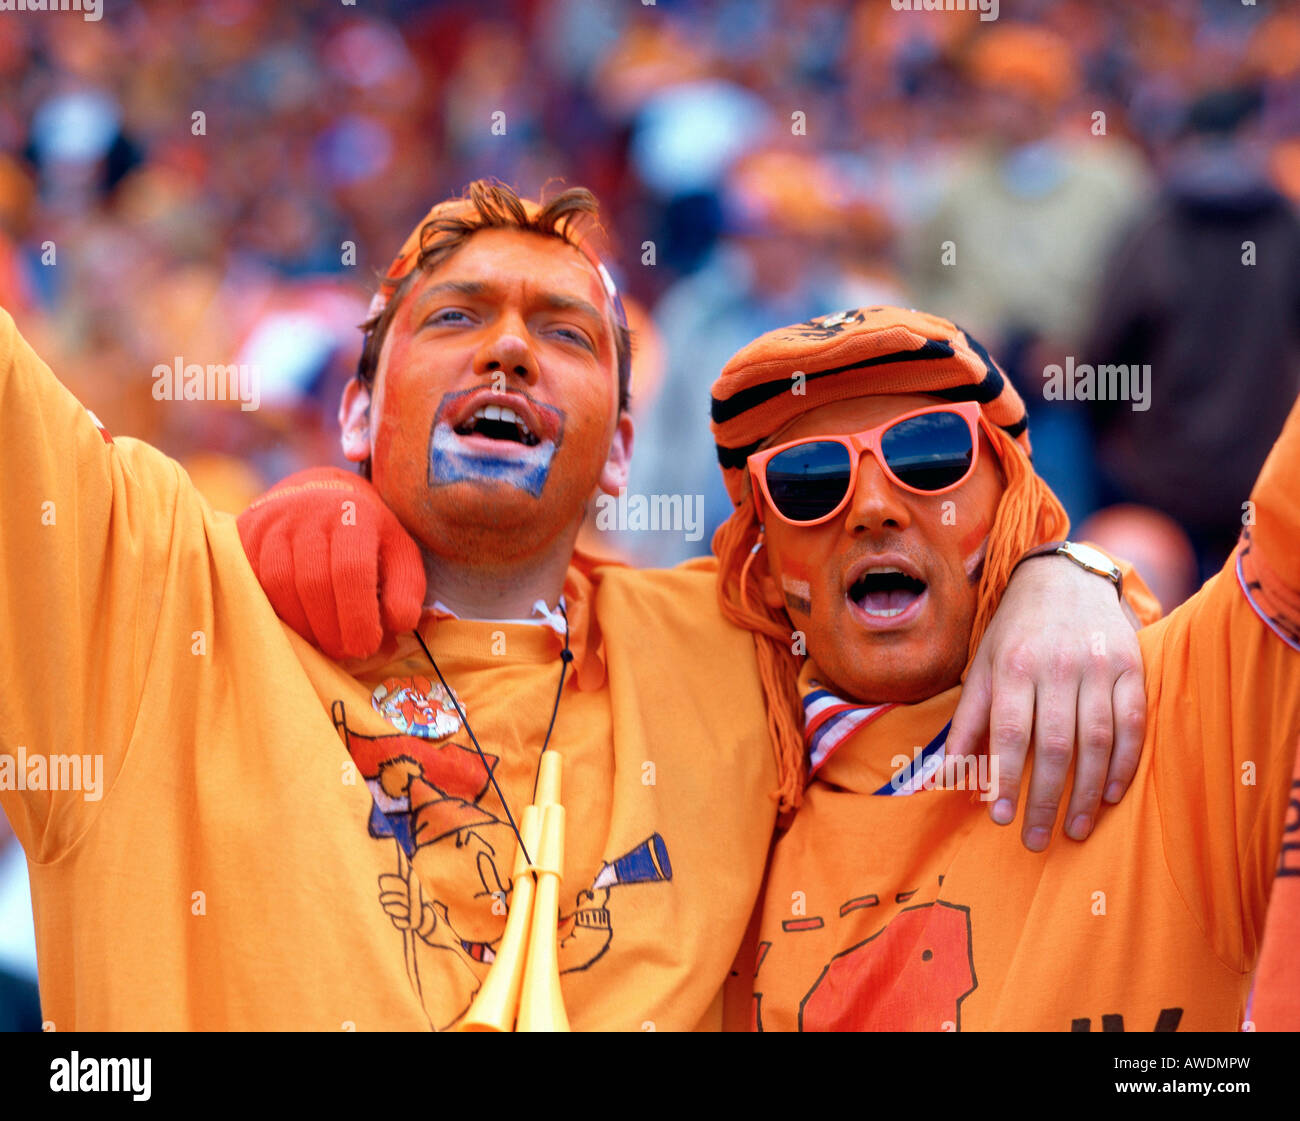 Les fans de football néerlandais fun portrait orange jouer jeu soccer fan  fou cheer Pays-bas Hollande Europe partisan homme heureux shout Photo Stock  - Alamy